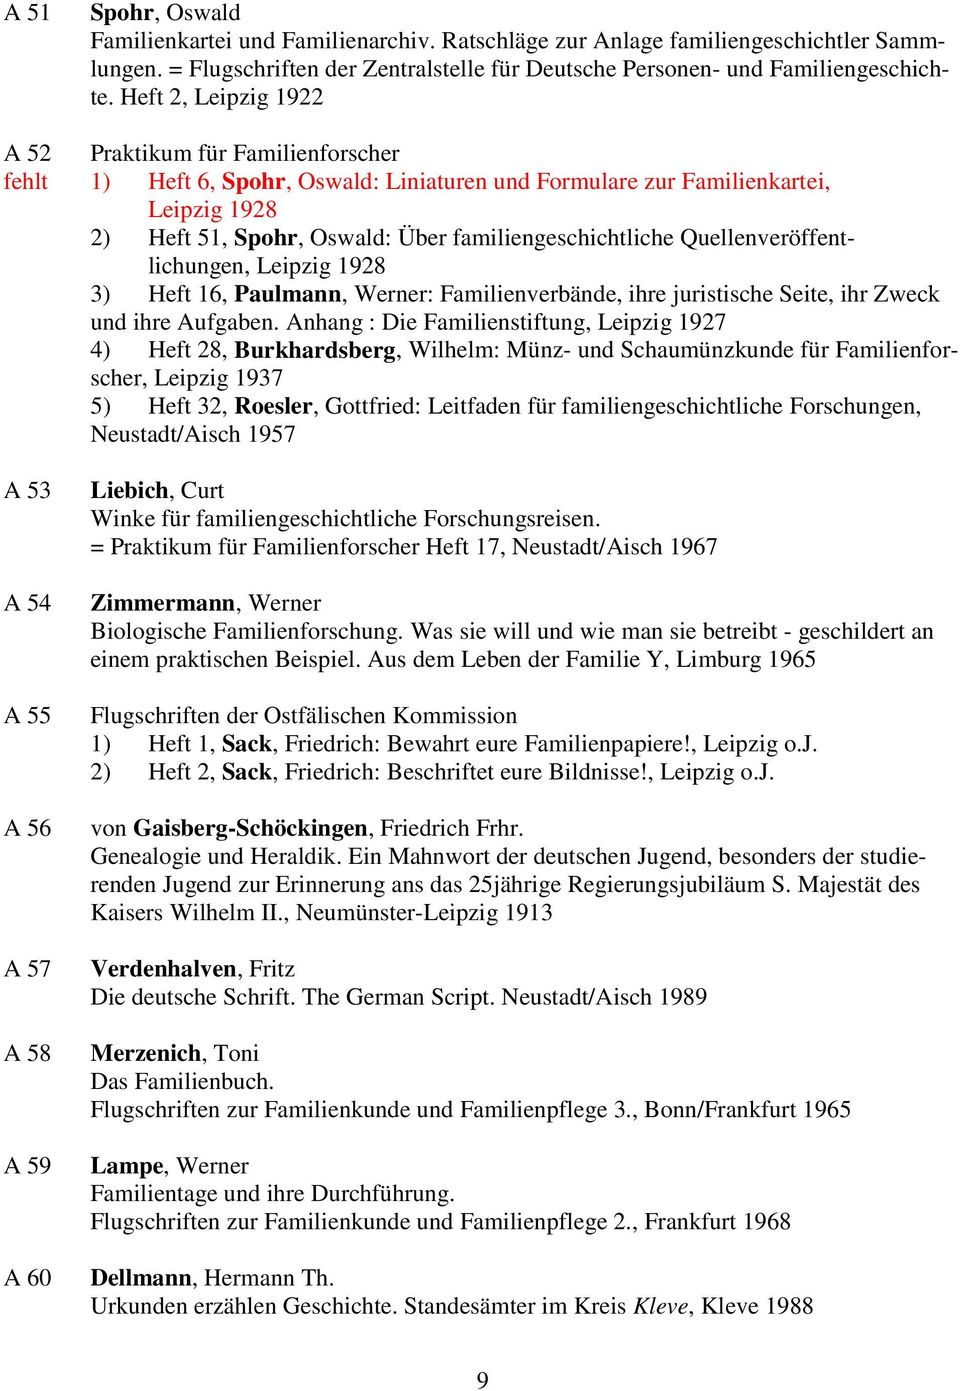 familiengeschichtliche Quellenveröffentlichungen, Leipzig 1928 3) Heft 16, Paulmann, Werner: Familienverbände, ihre juristische Seite, ihr Zweck und ihre Aufgaben.